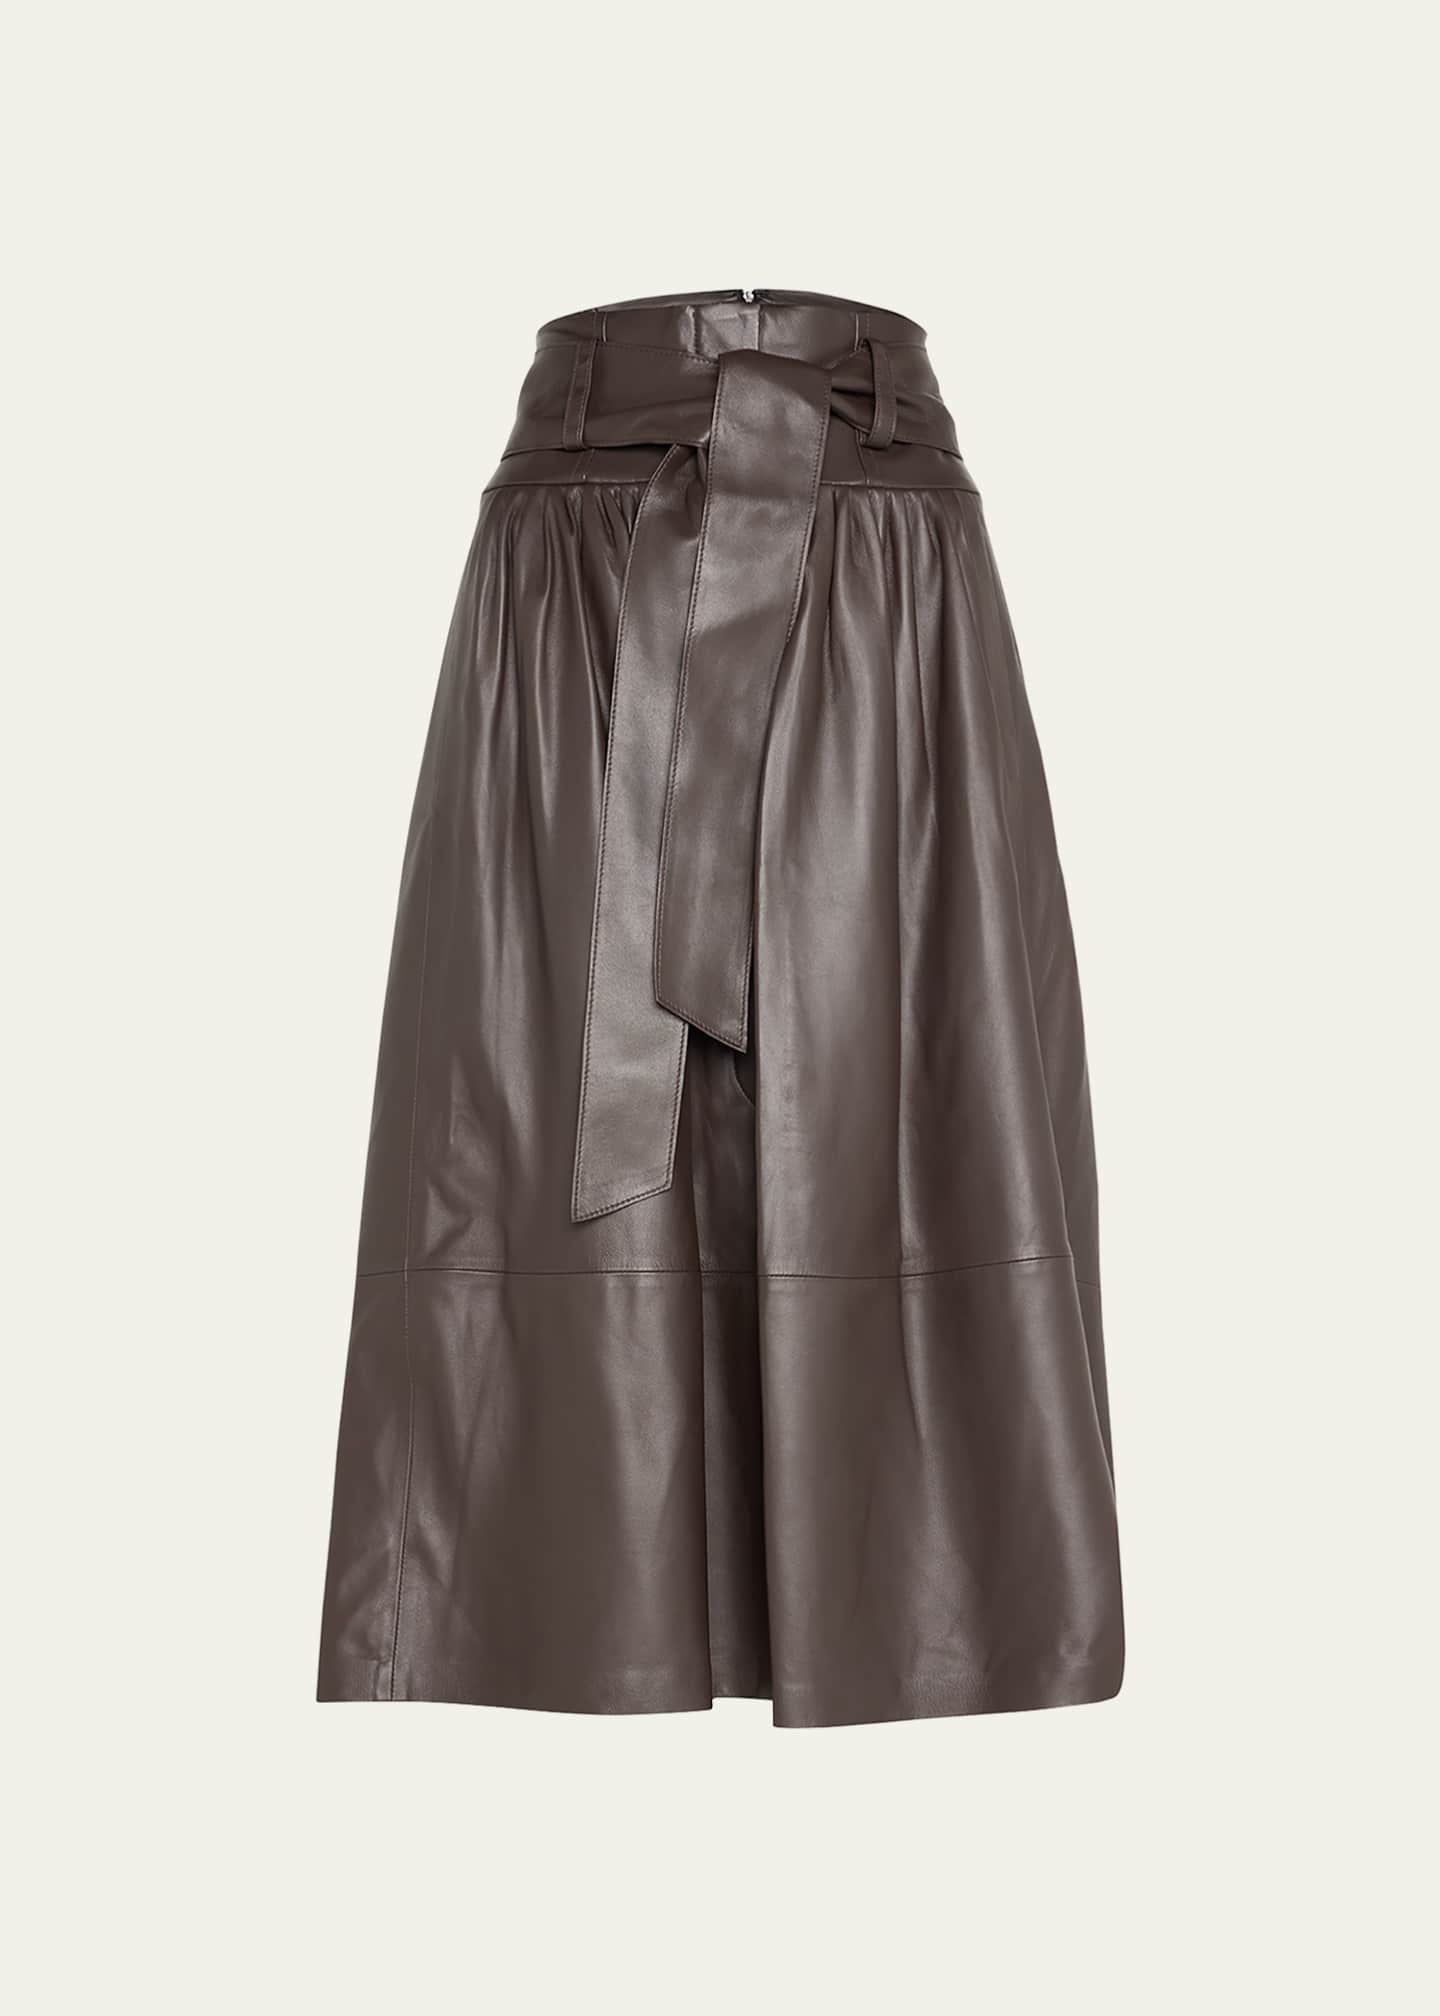 Vince Leather Pleated Midi Skirt - Bergdorf Goodman